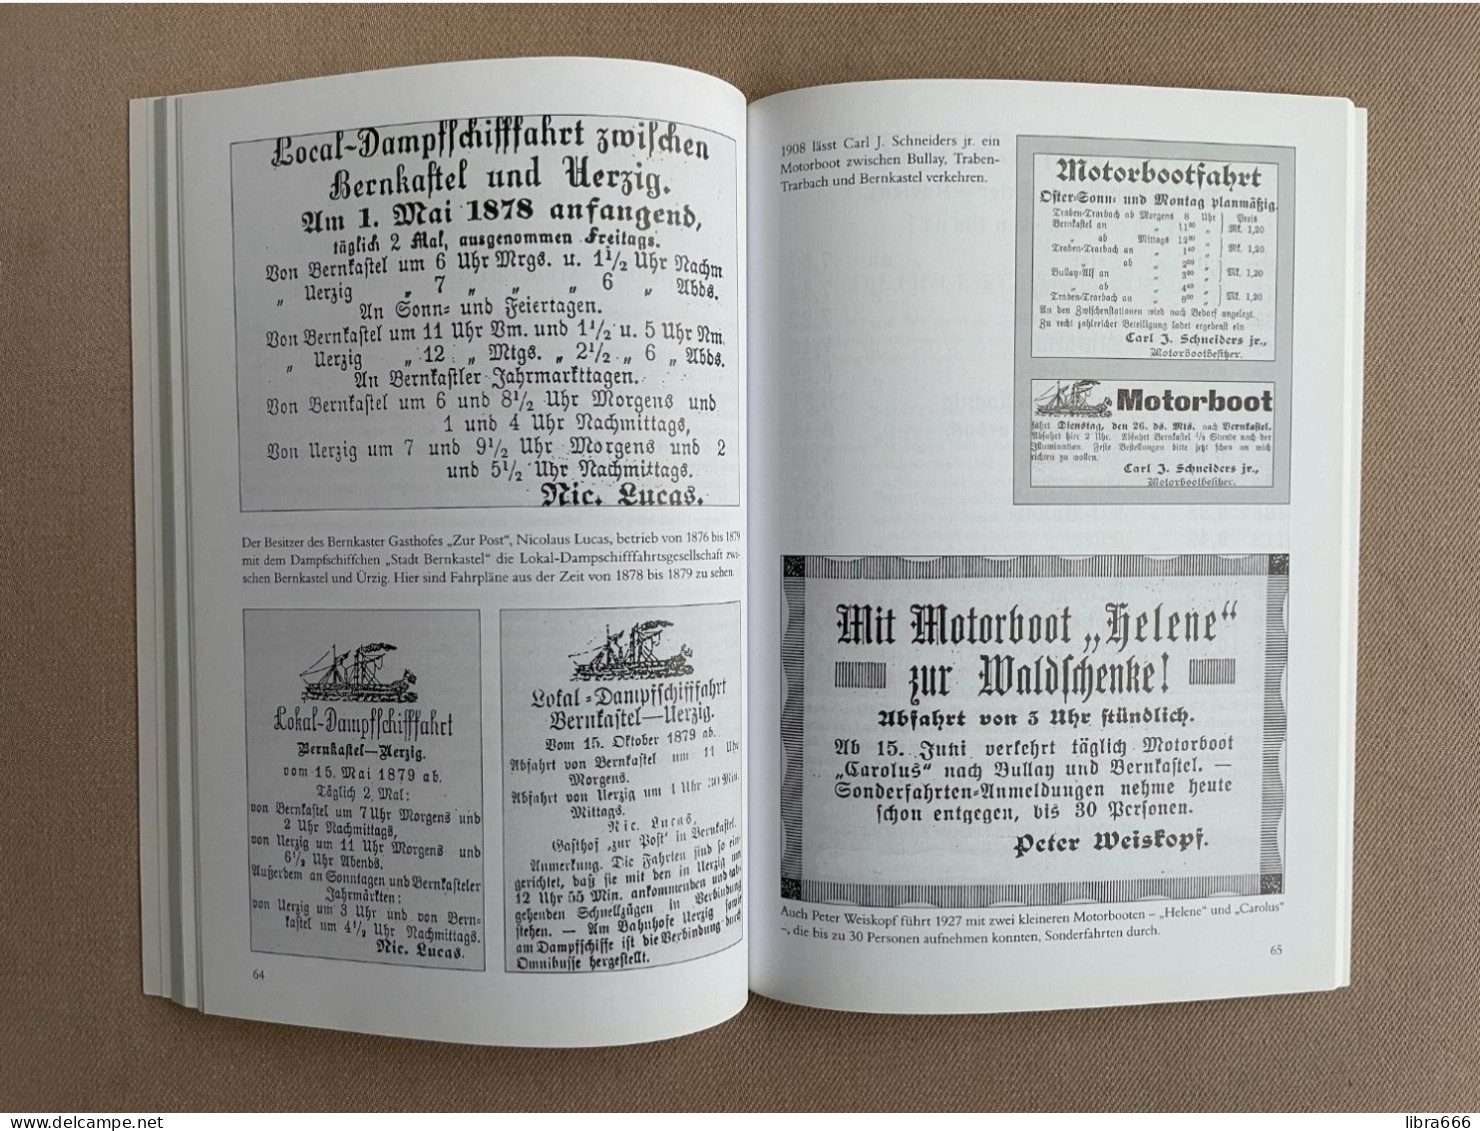 PERSONENSCHIFFFAHRT IM MOSELTAL 1830-1980 - Karl-Josef Gilles 2012 - 128 pp. - 23,5 x 16,5 cm. - Sutton Verlag GmbH